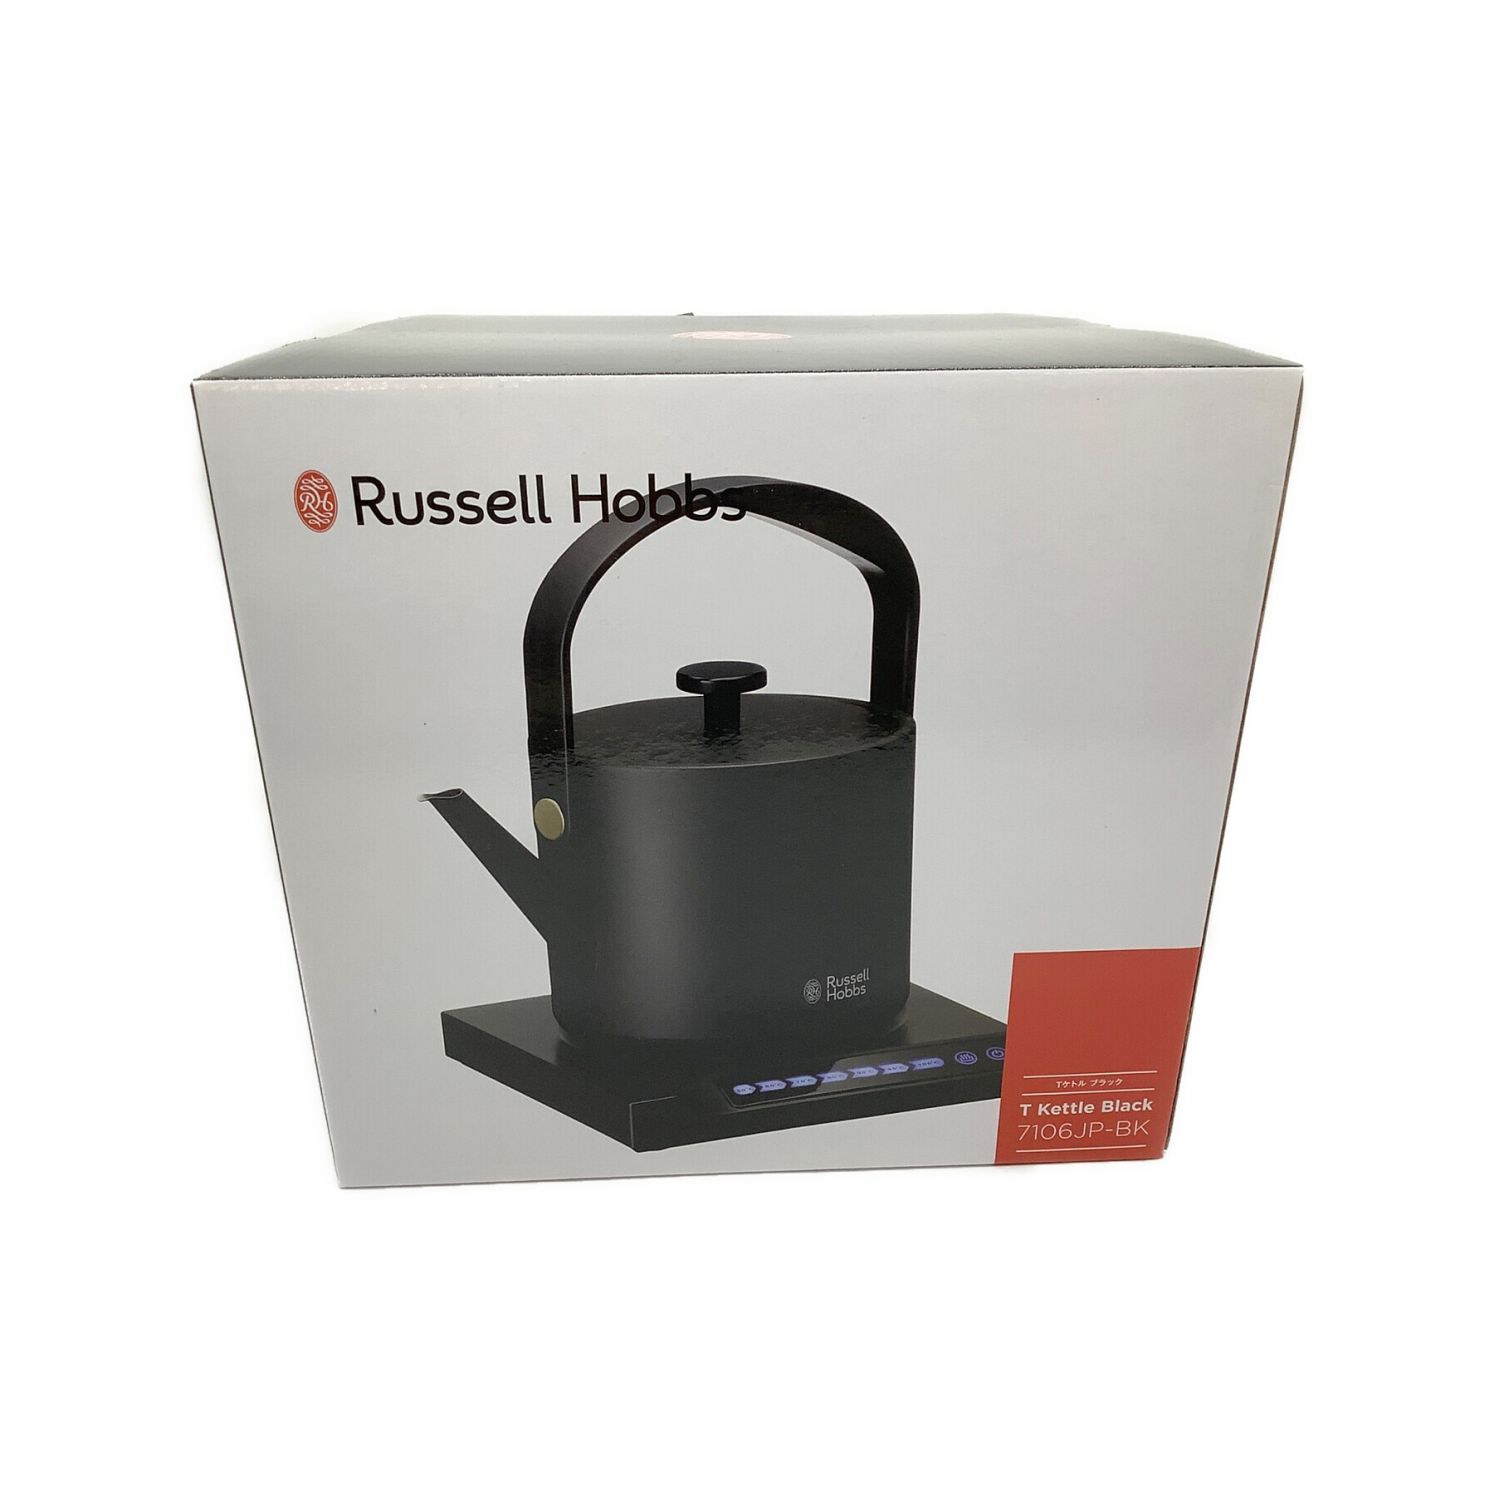 Russell Hobbs (ラッセル・ホブス) 電気ケトル ブラック 7106JP-BK 0.6